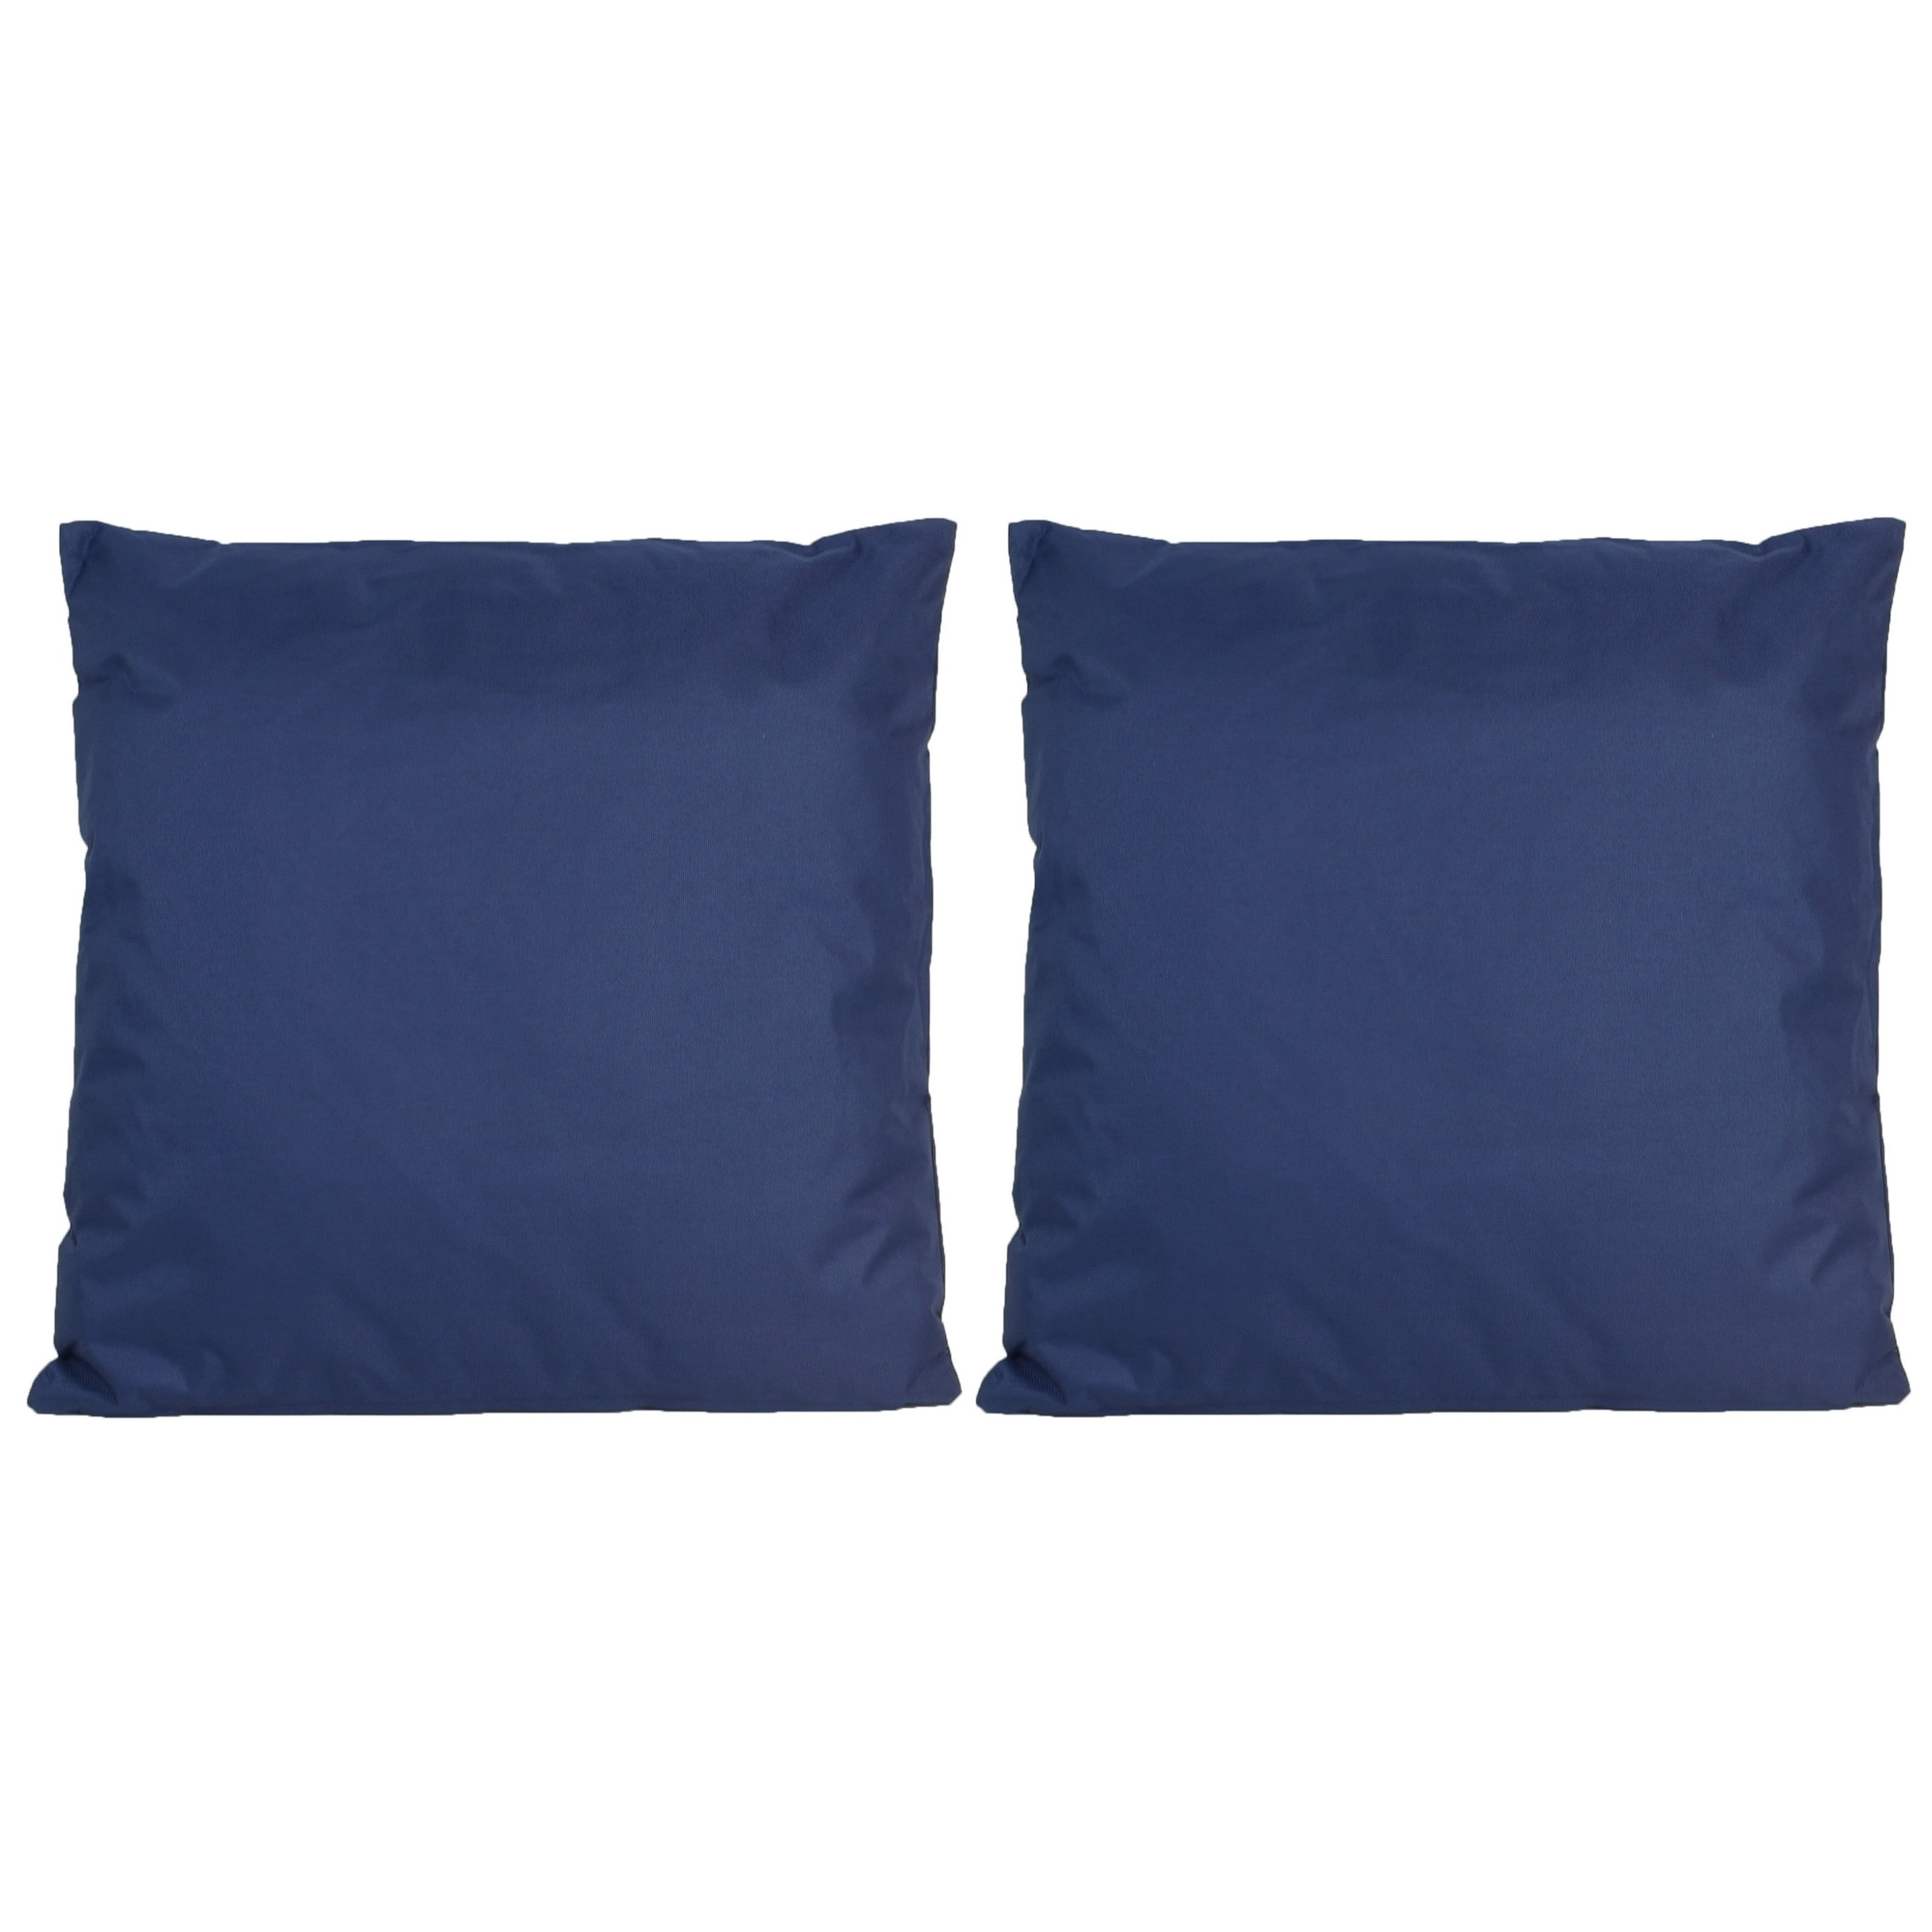 6x Bank-sier kussens voor binnen en buiten in de kleur donkerblauw 45 x 45 cm